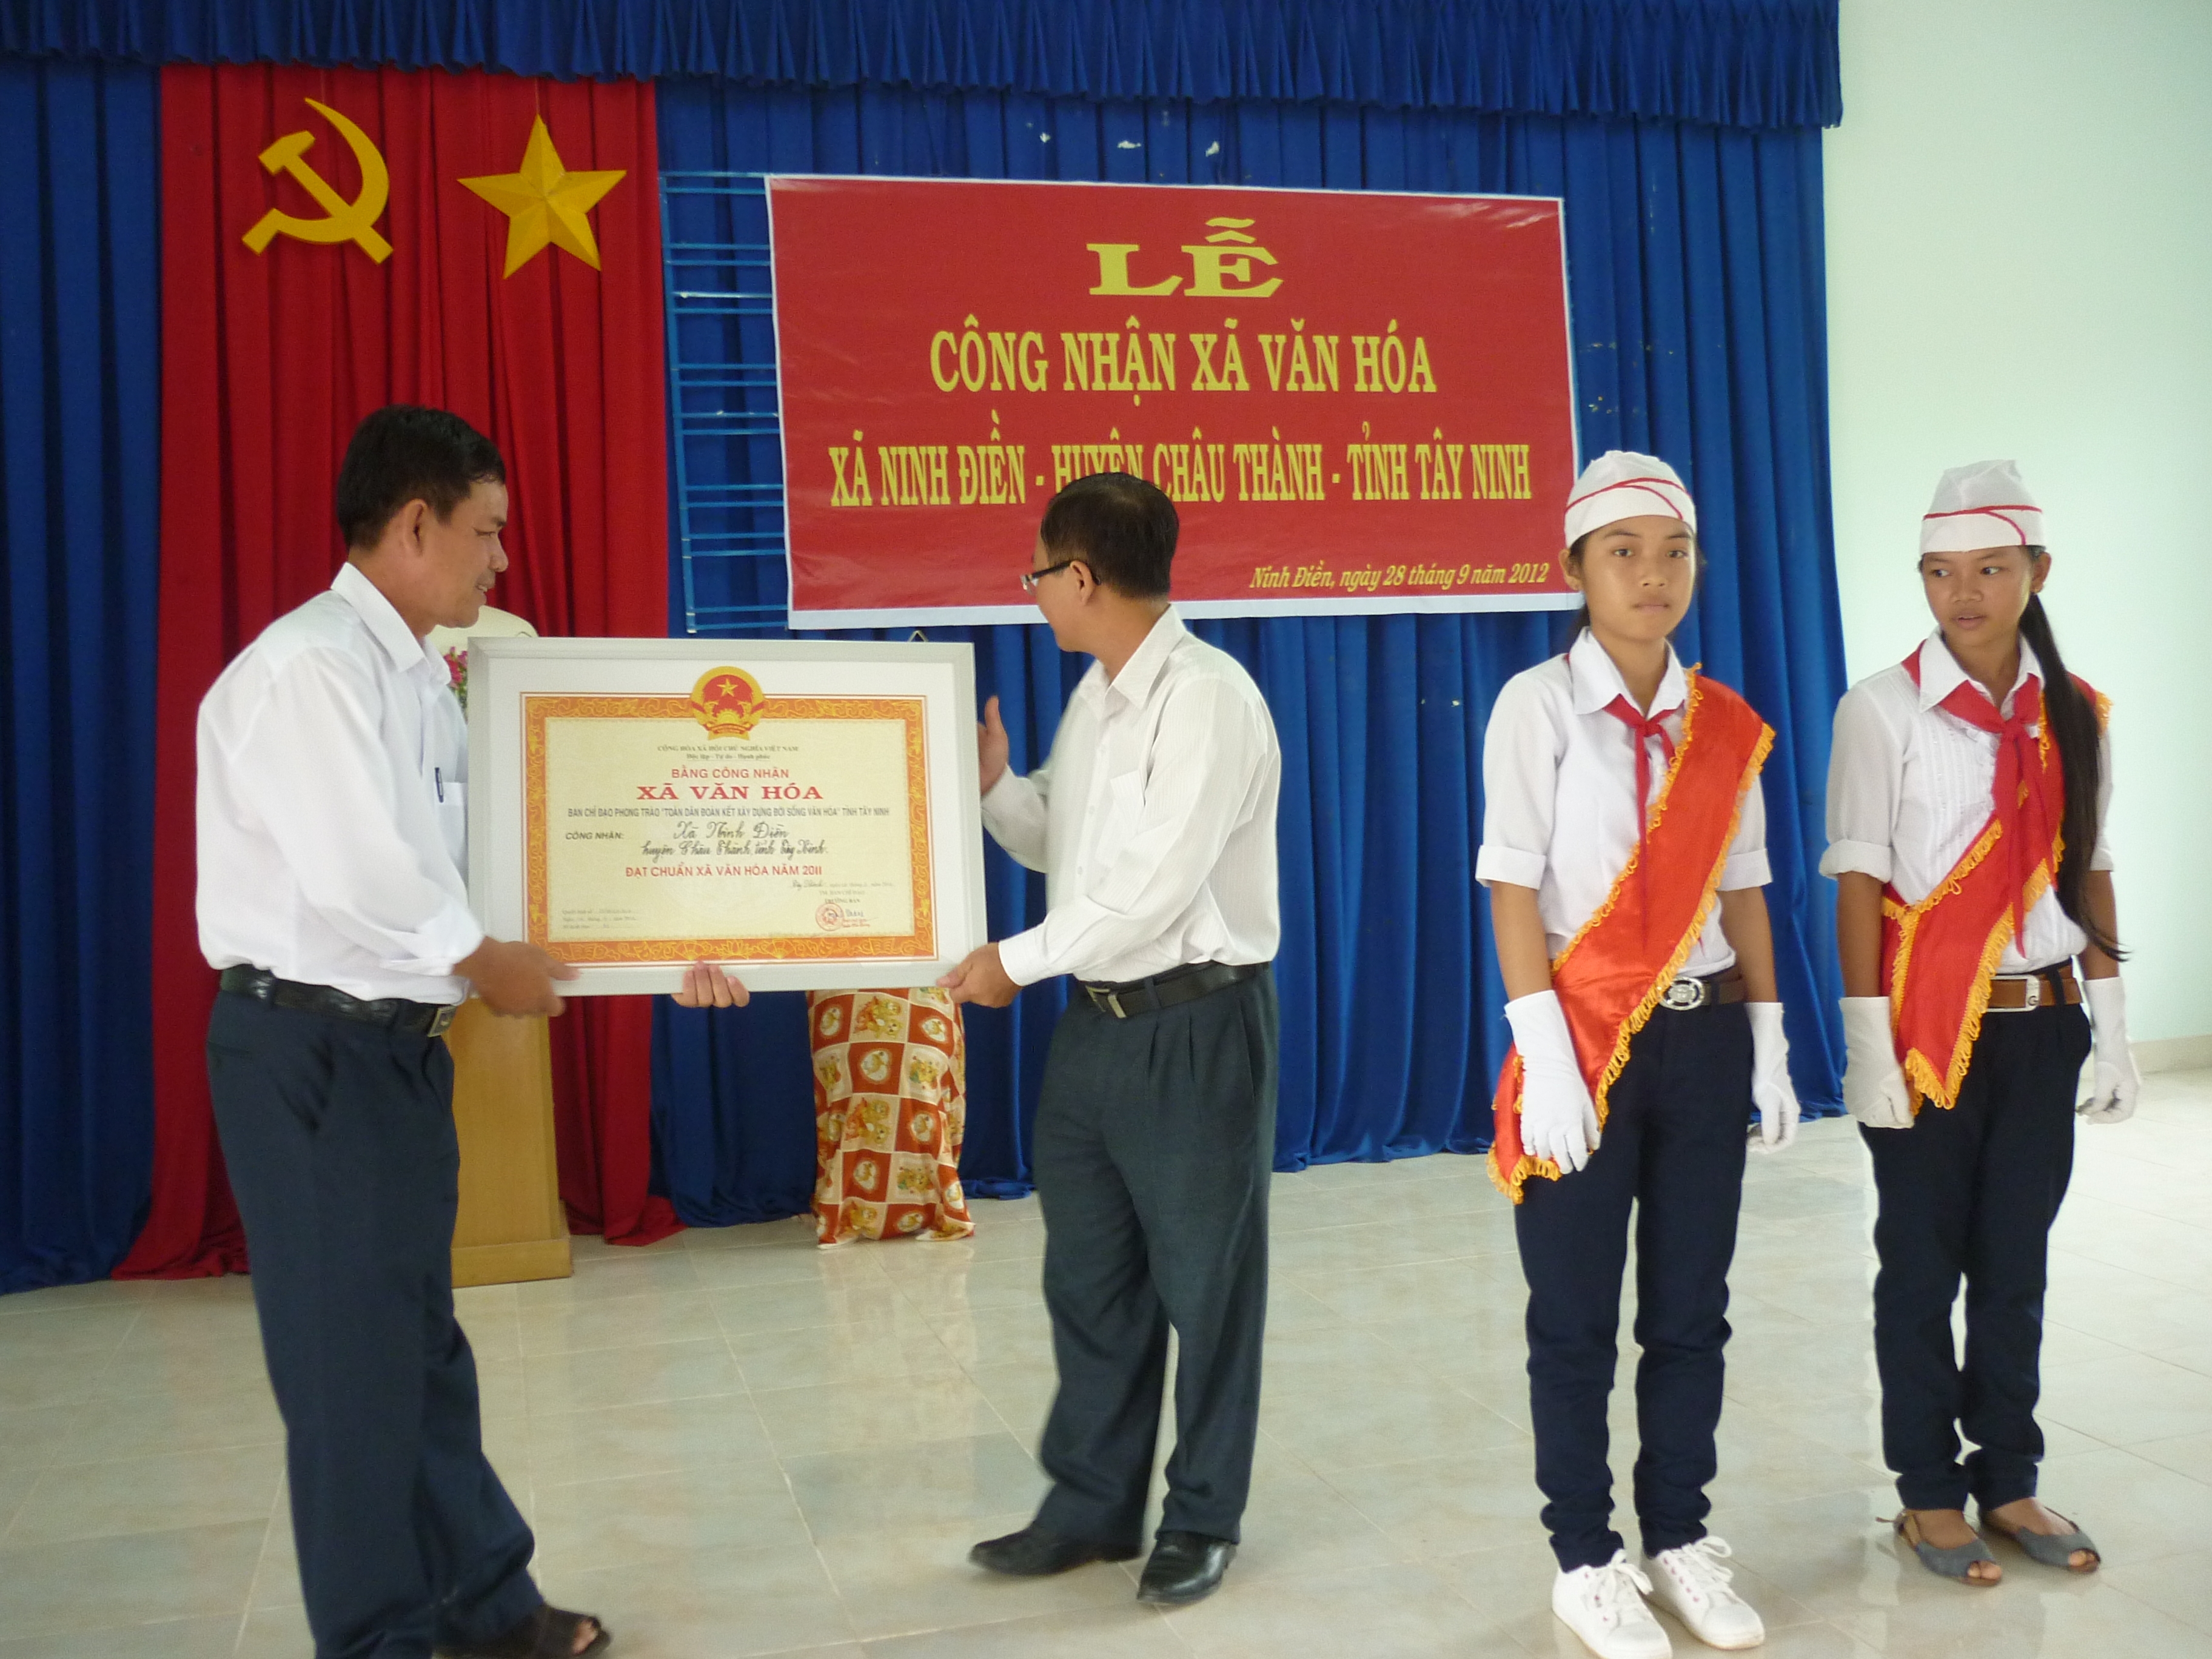 Ông Nguyễn Thanh Lam, Phó Chủ tịch UBND huyện Châu Thành trao bằng cho đại diện UBND xã Ninh Điền